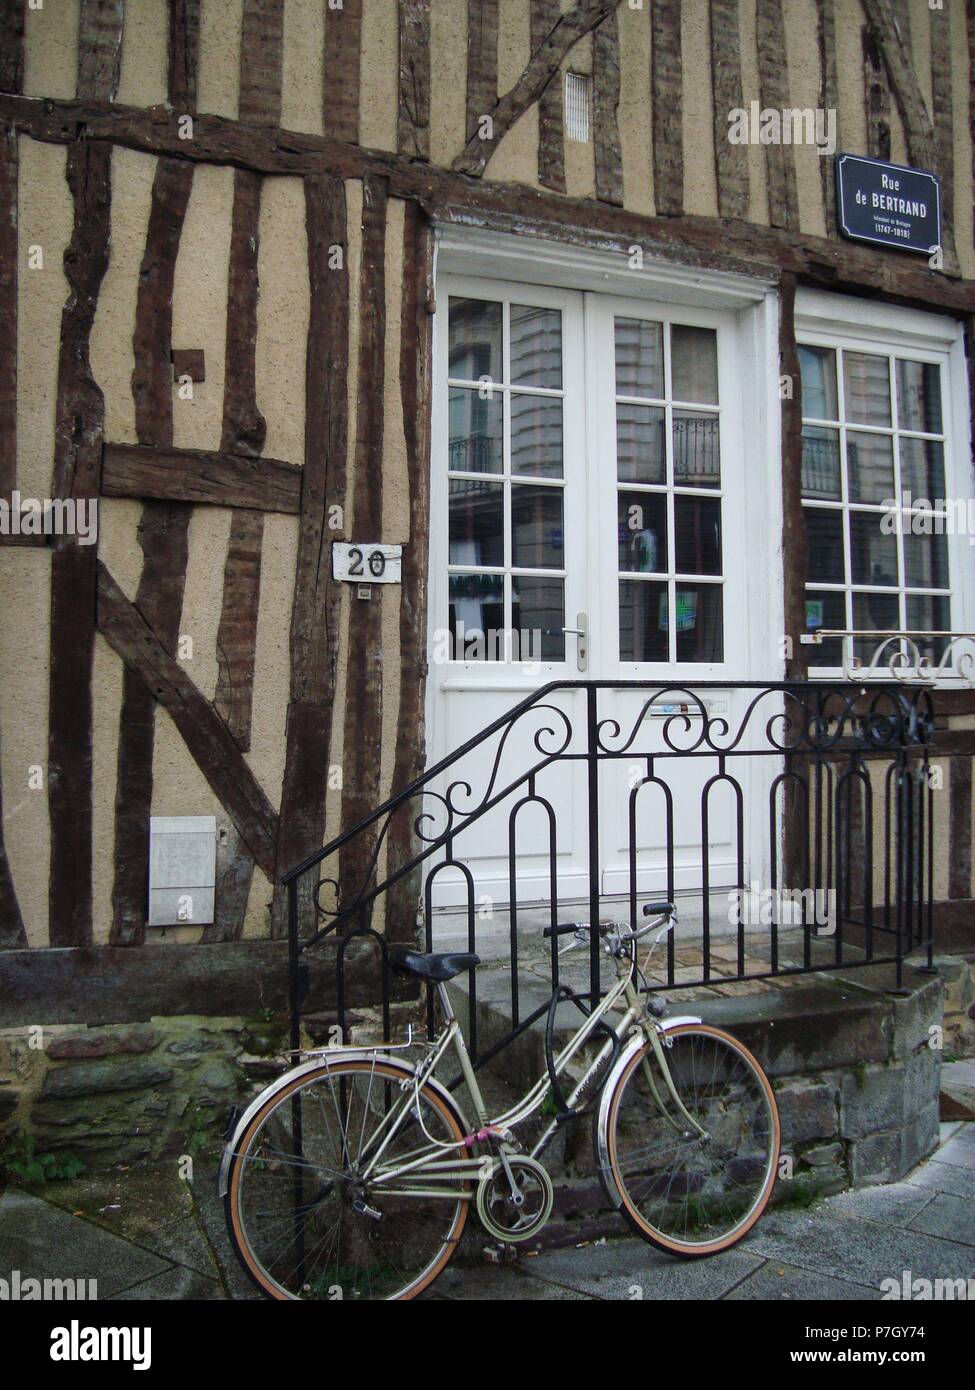 Casa con bicicleta en la Rue de Bertrand de Rennes, Bretaña francesa Stock  Photo - Alamy